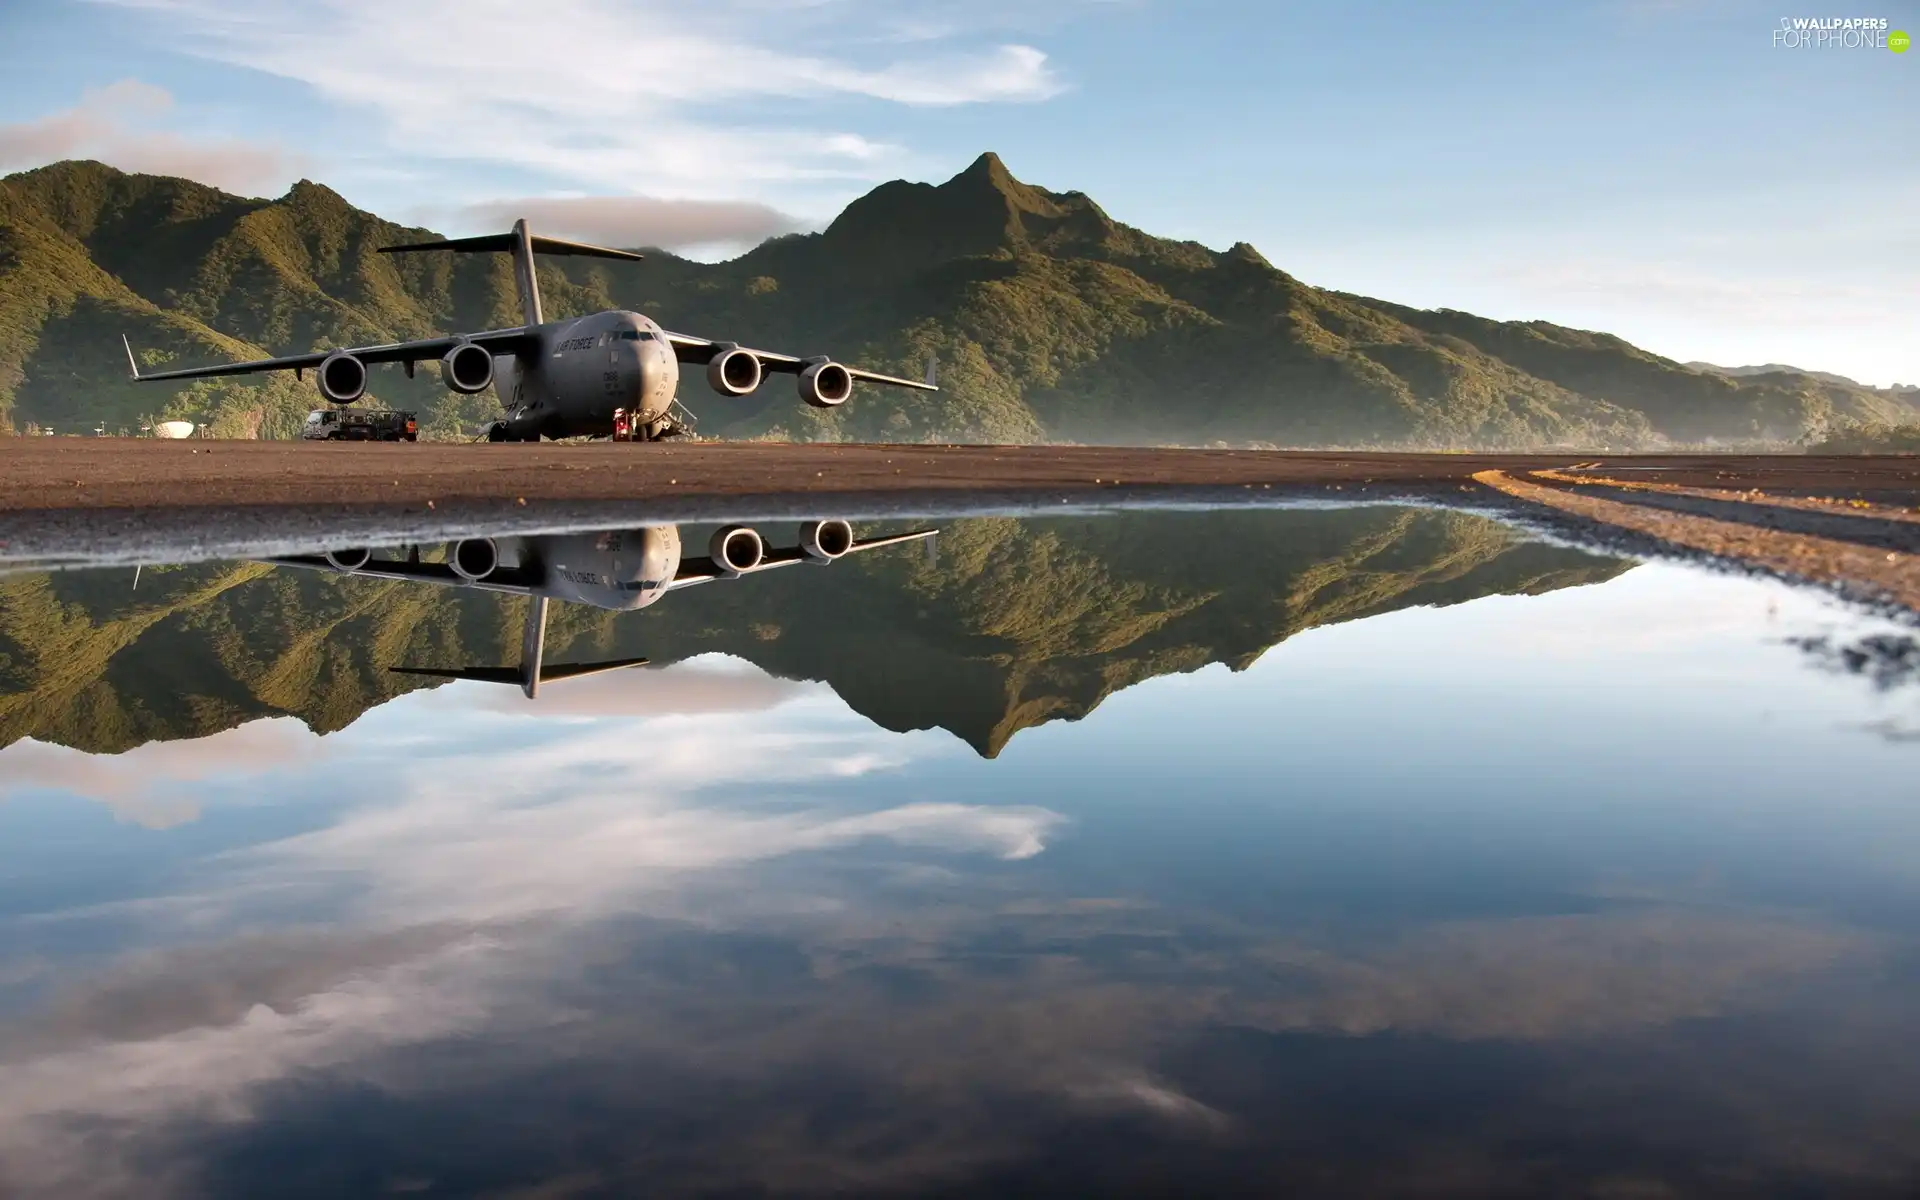 Globemaster III, Boeing, water, reflection, Mountains, C-17